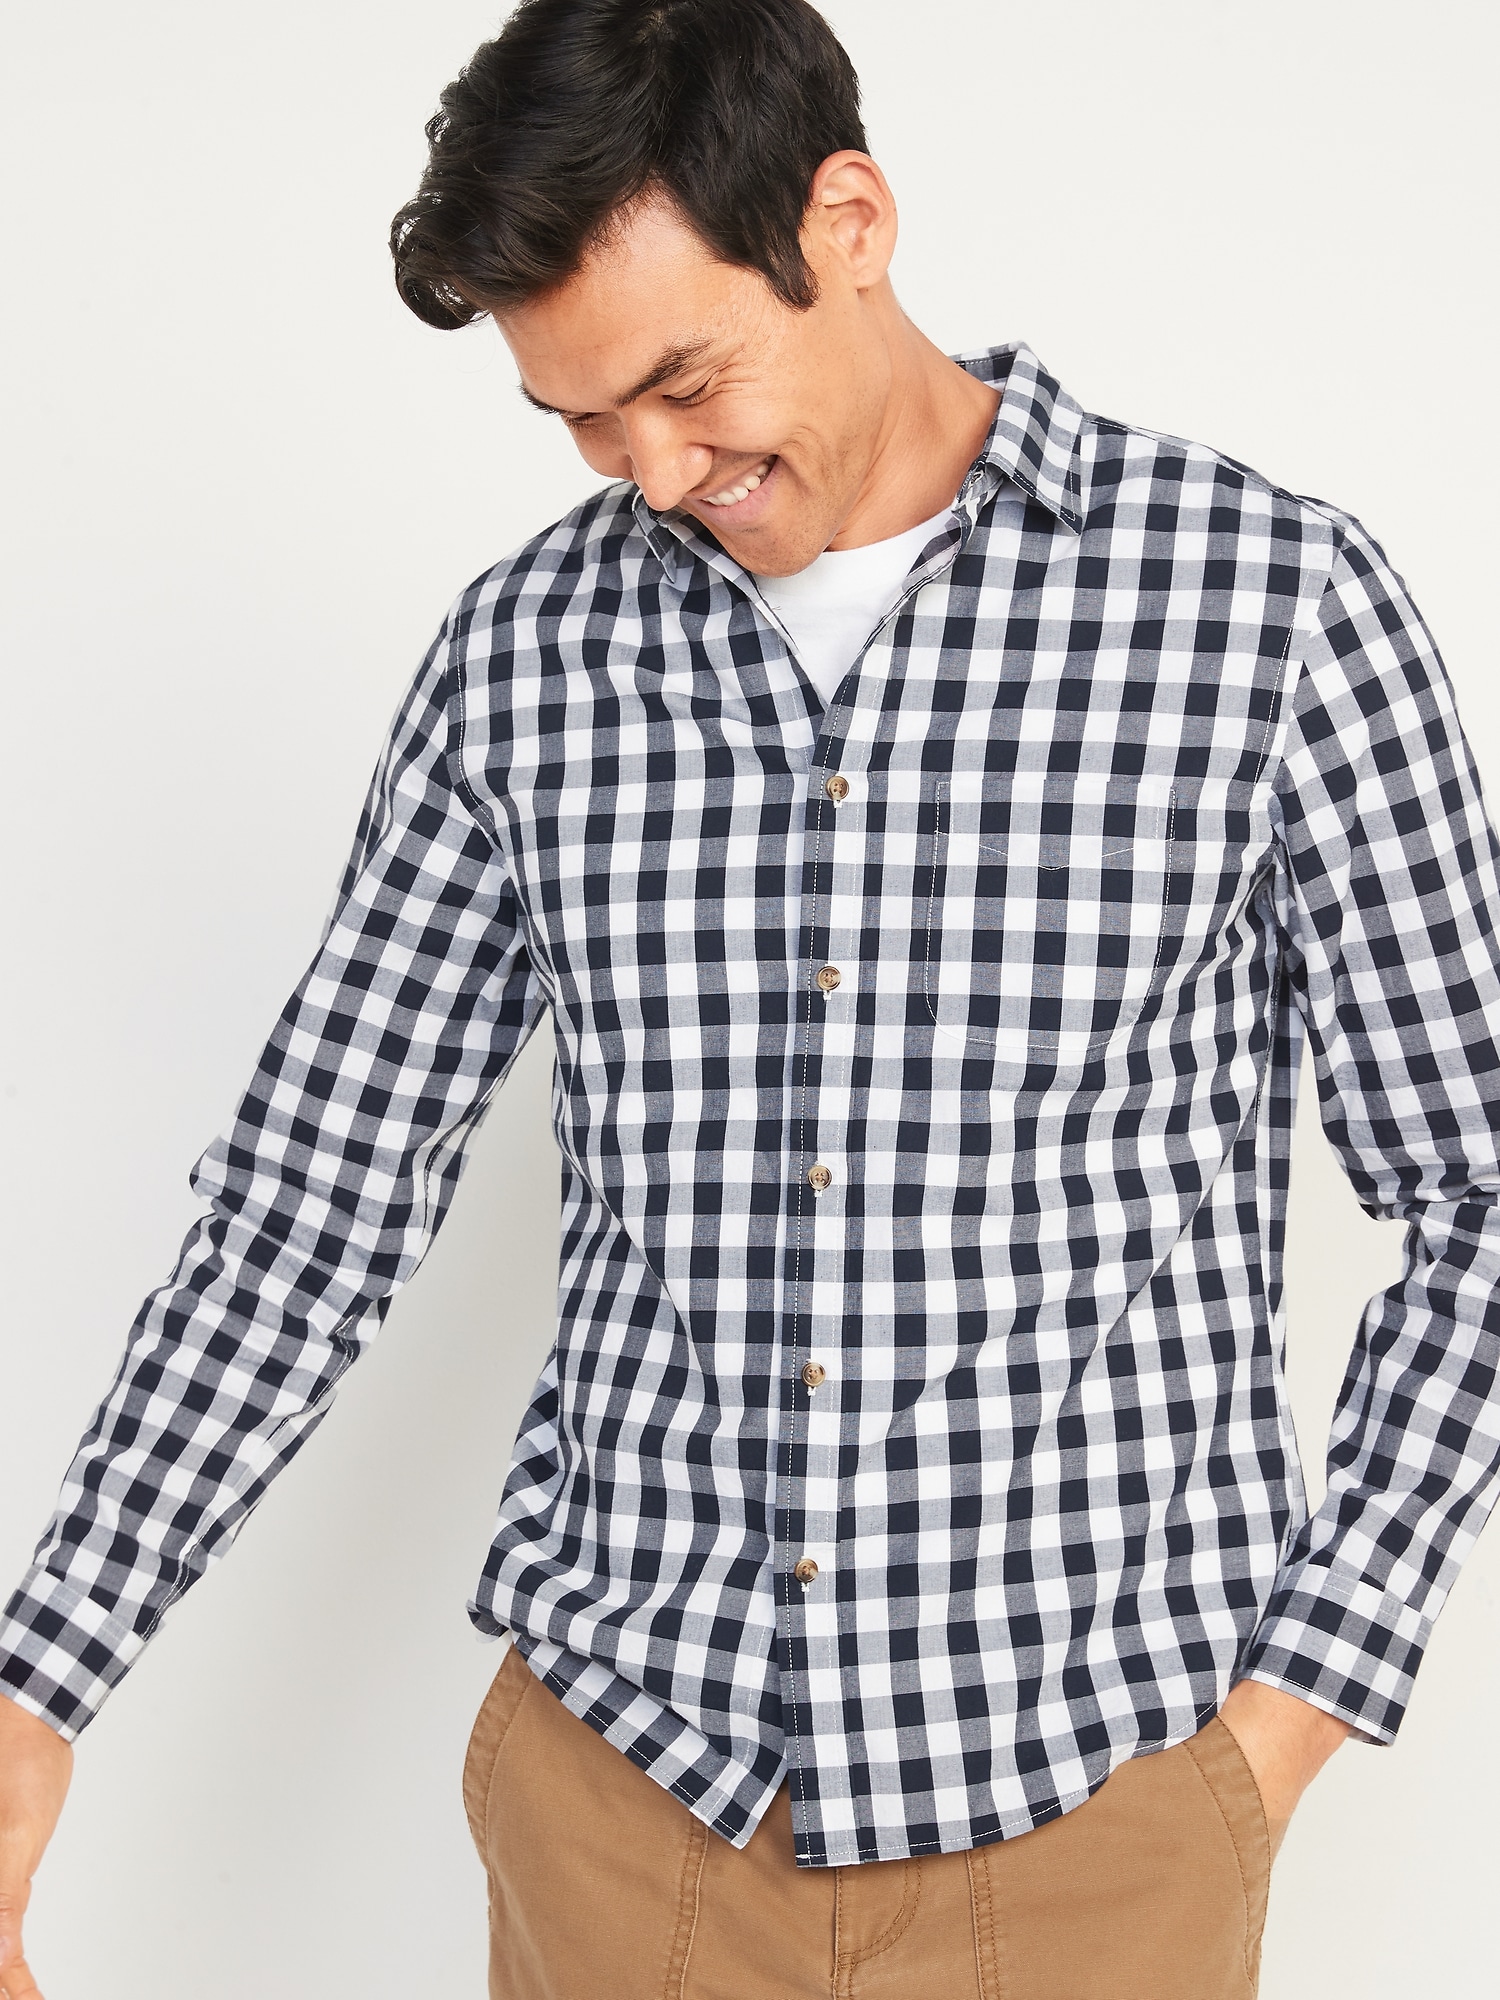 Old Navy Slim-Fit Built-In Flex Everyday Shirt for Men blue. 1